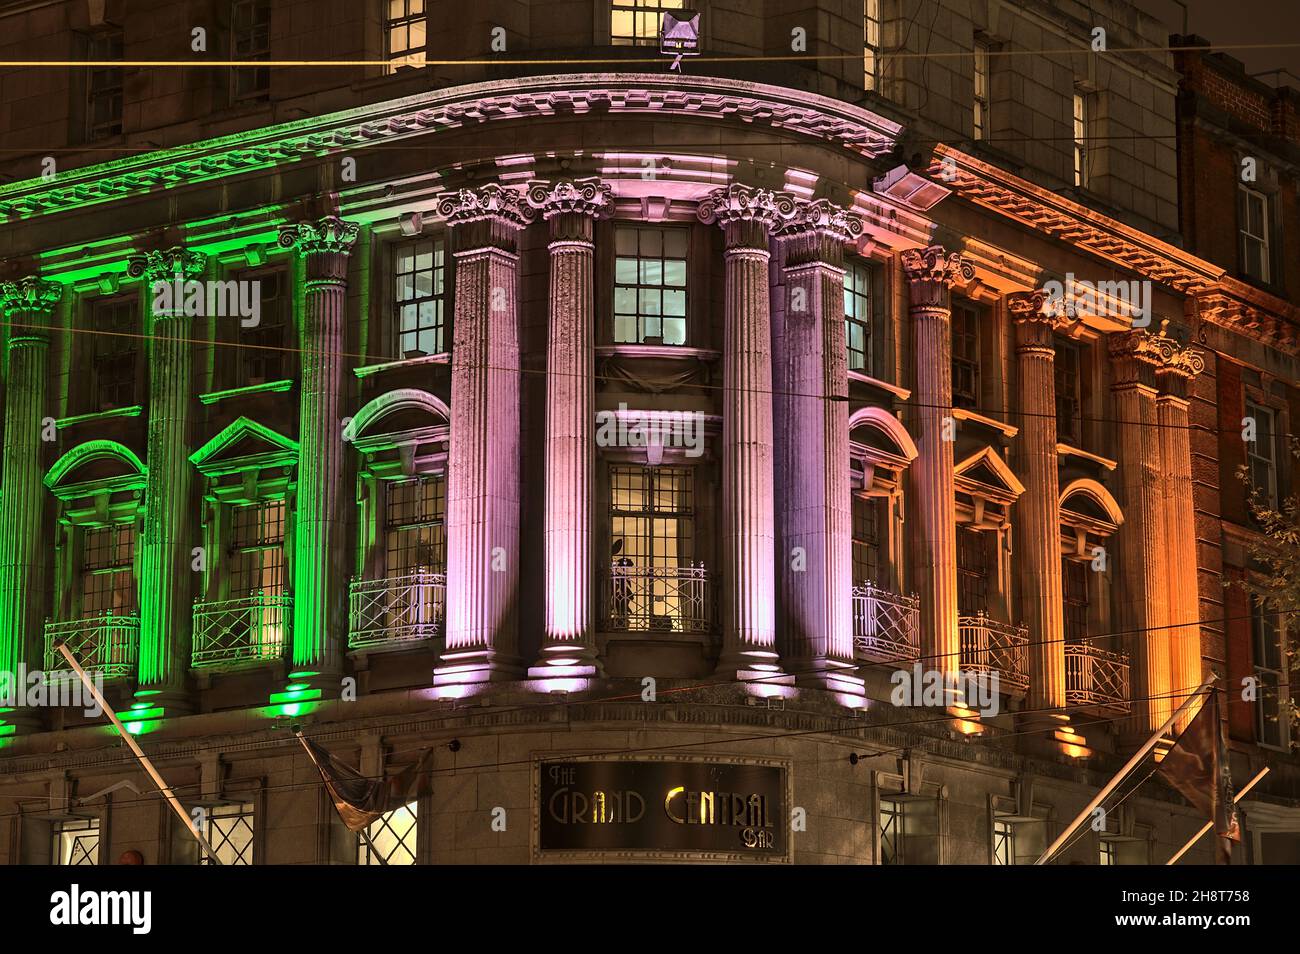 Dublin, Irlande - 13 novembre 2021 : belle vue de soirée des lumières de projection décorations imitant le drapeau irlandais sur la façade du Grand Central Bar. Banque D'Images